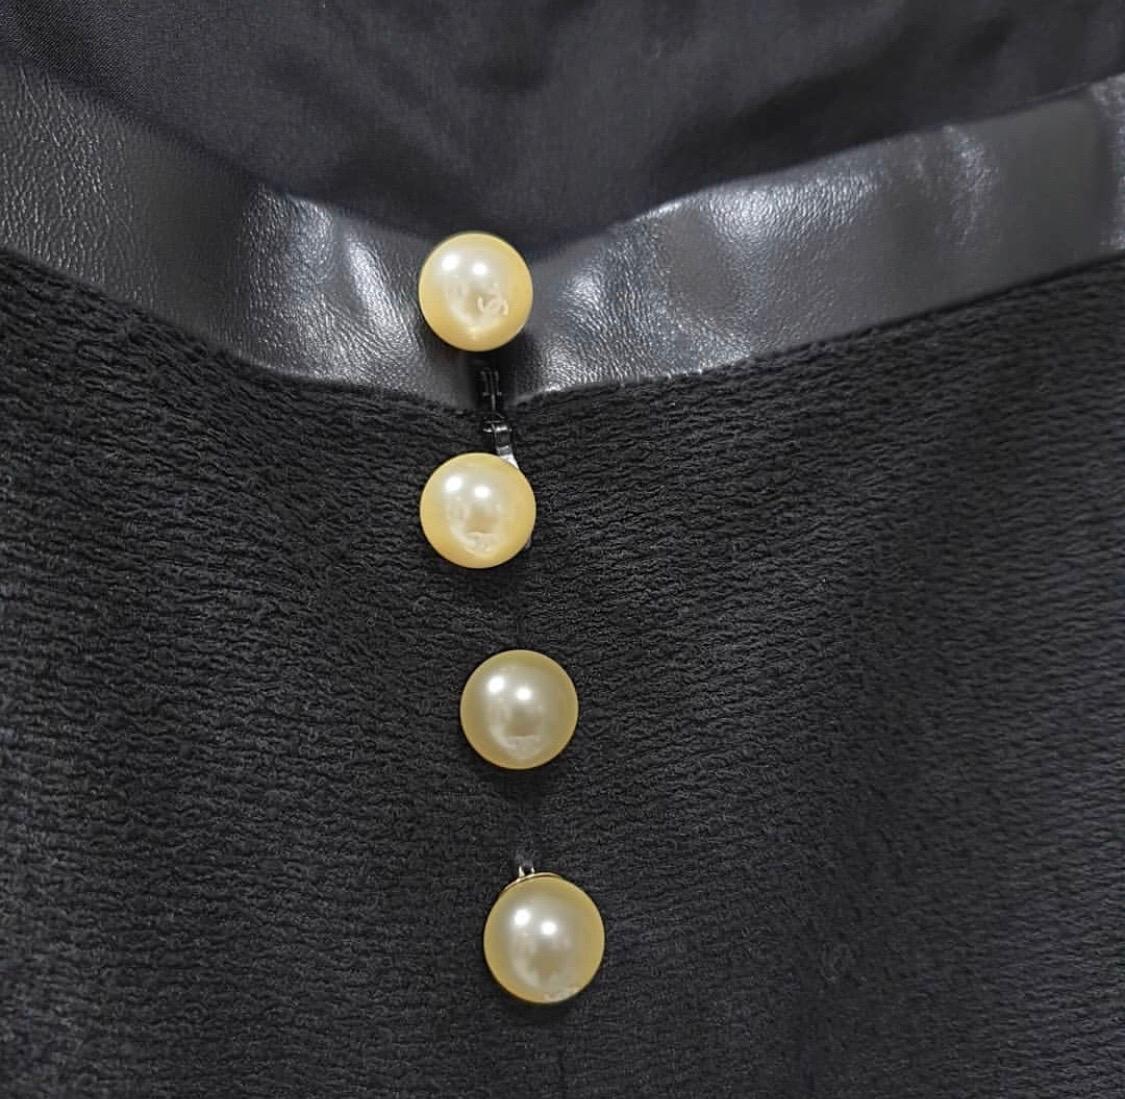 Chanel Black Wool Leather Trimmed Dress Jacket Set Suit For Sale 4